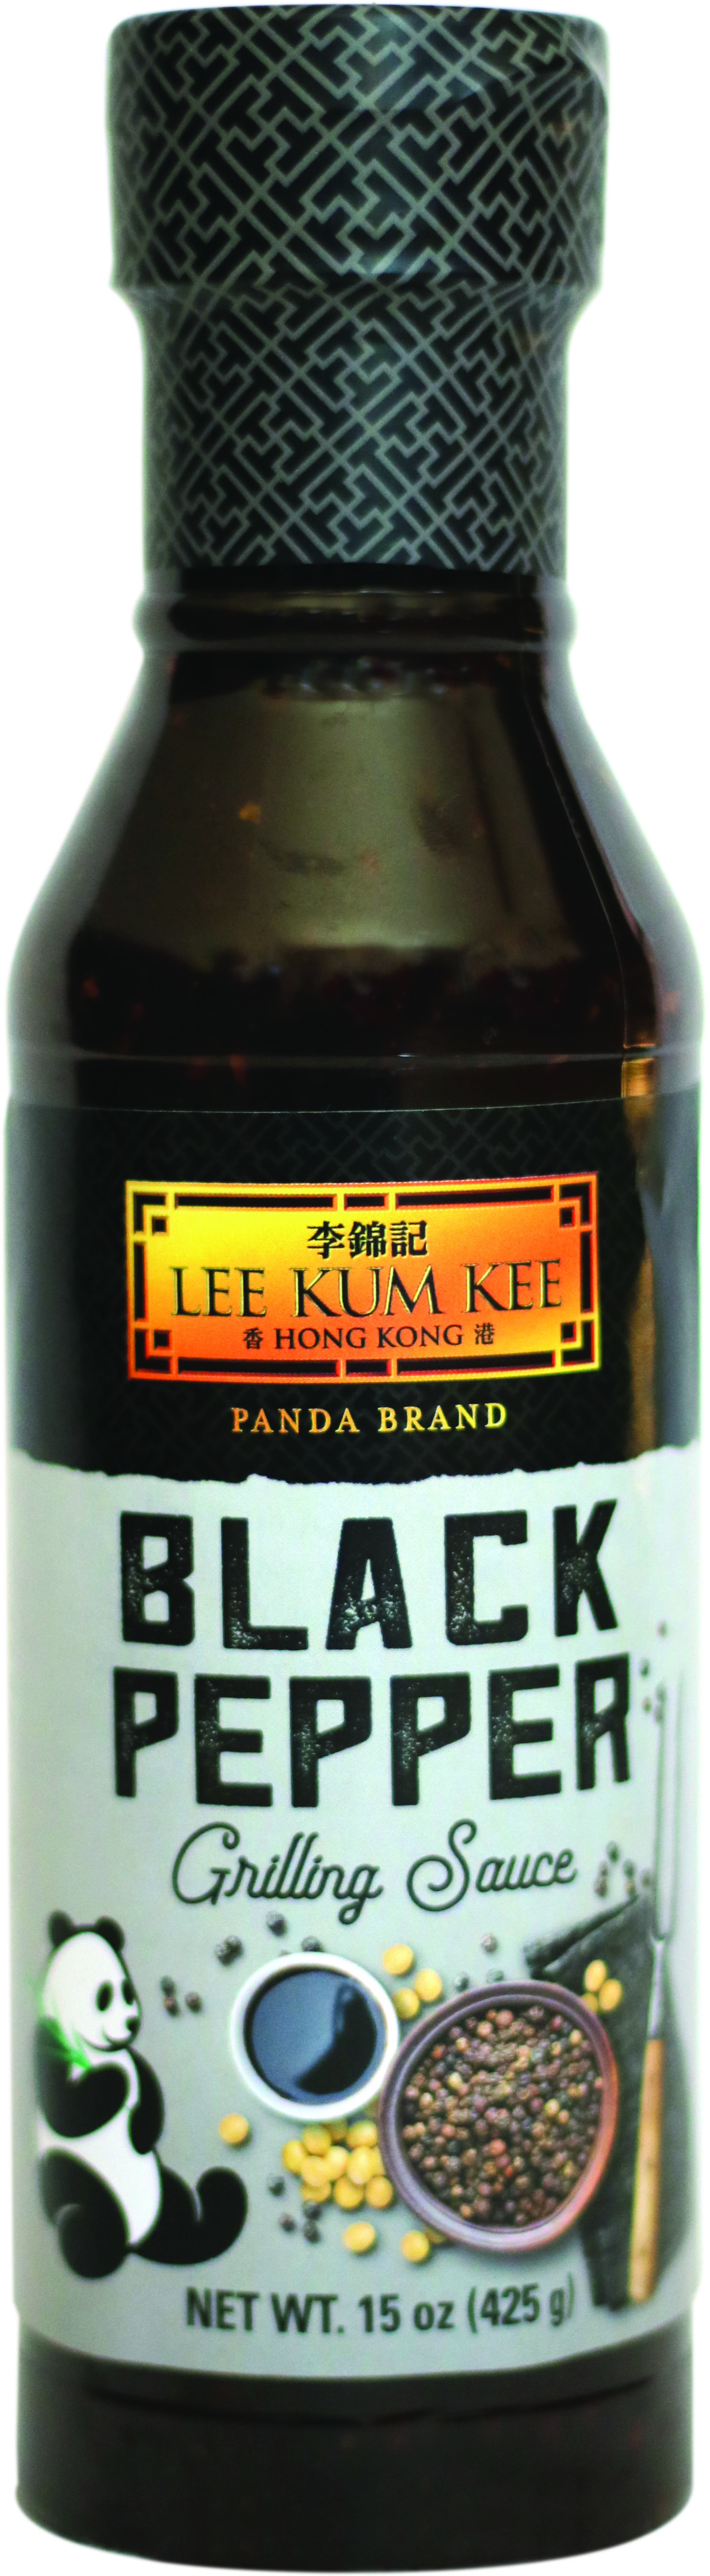 Panda Brand Black Pepper Grilling Sauce, 15 oz (454g) Bottle